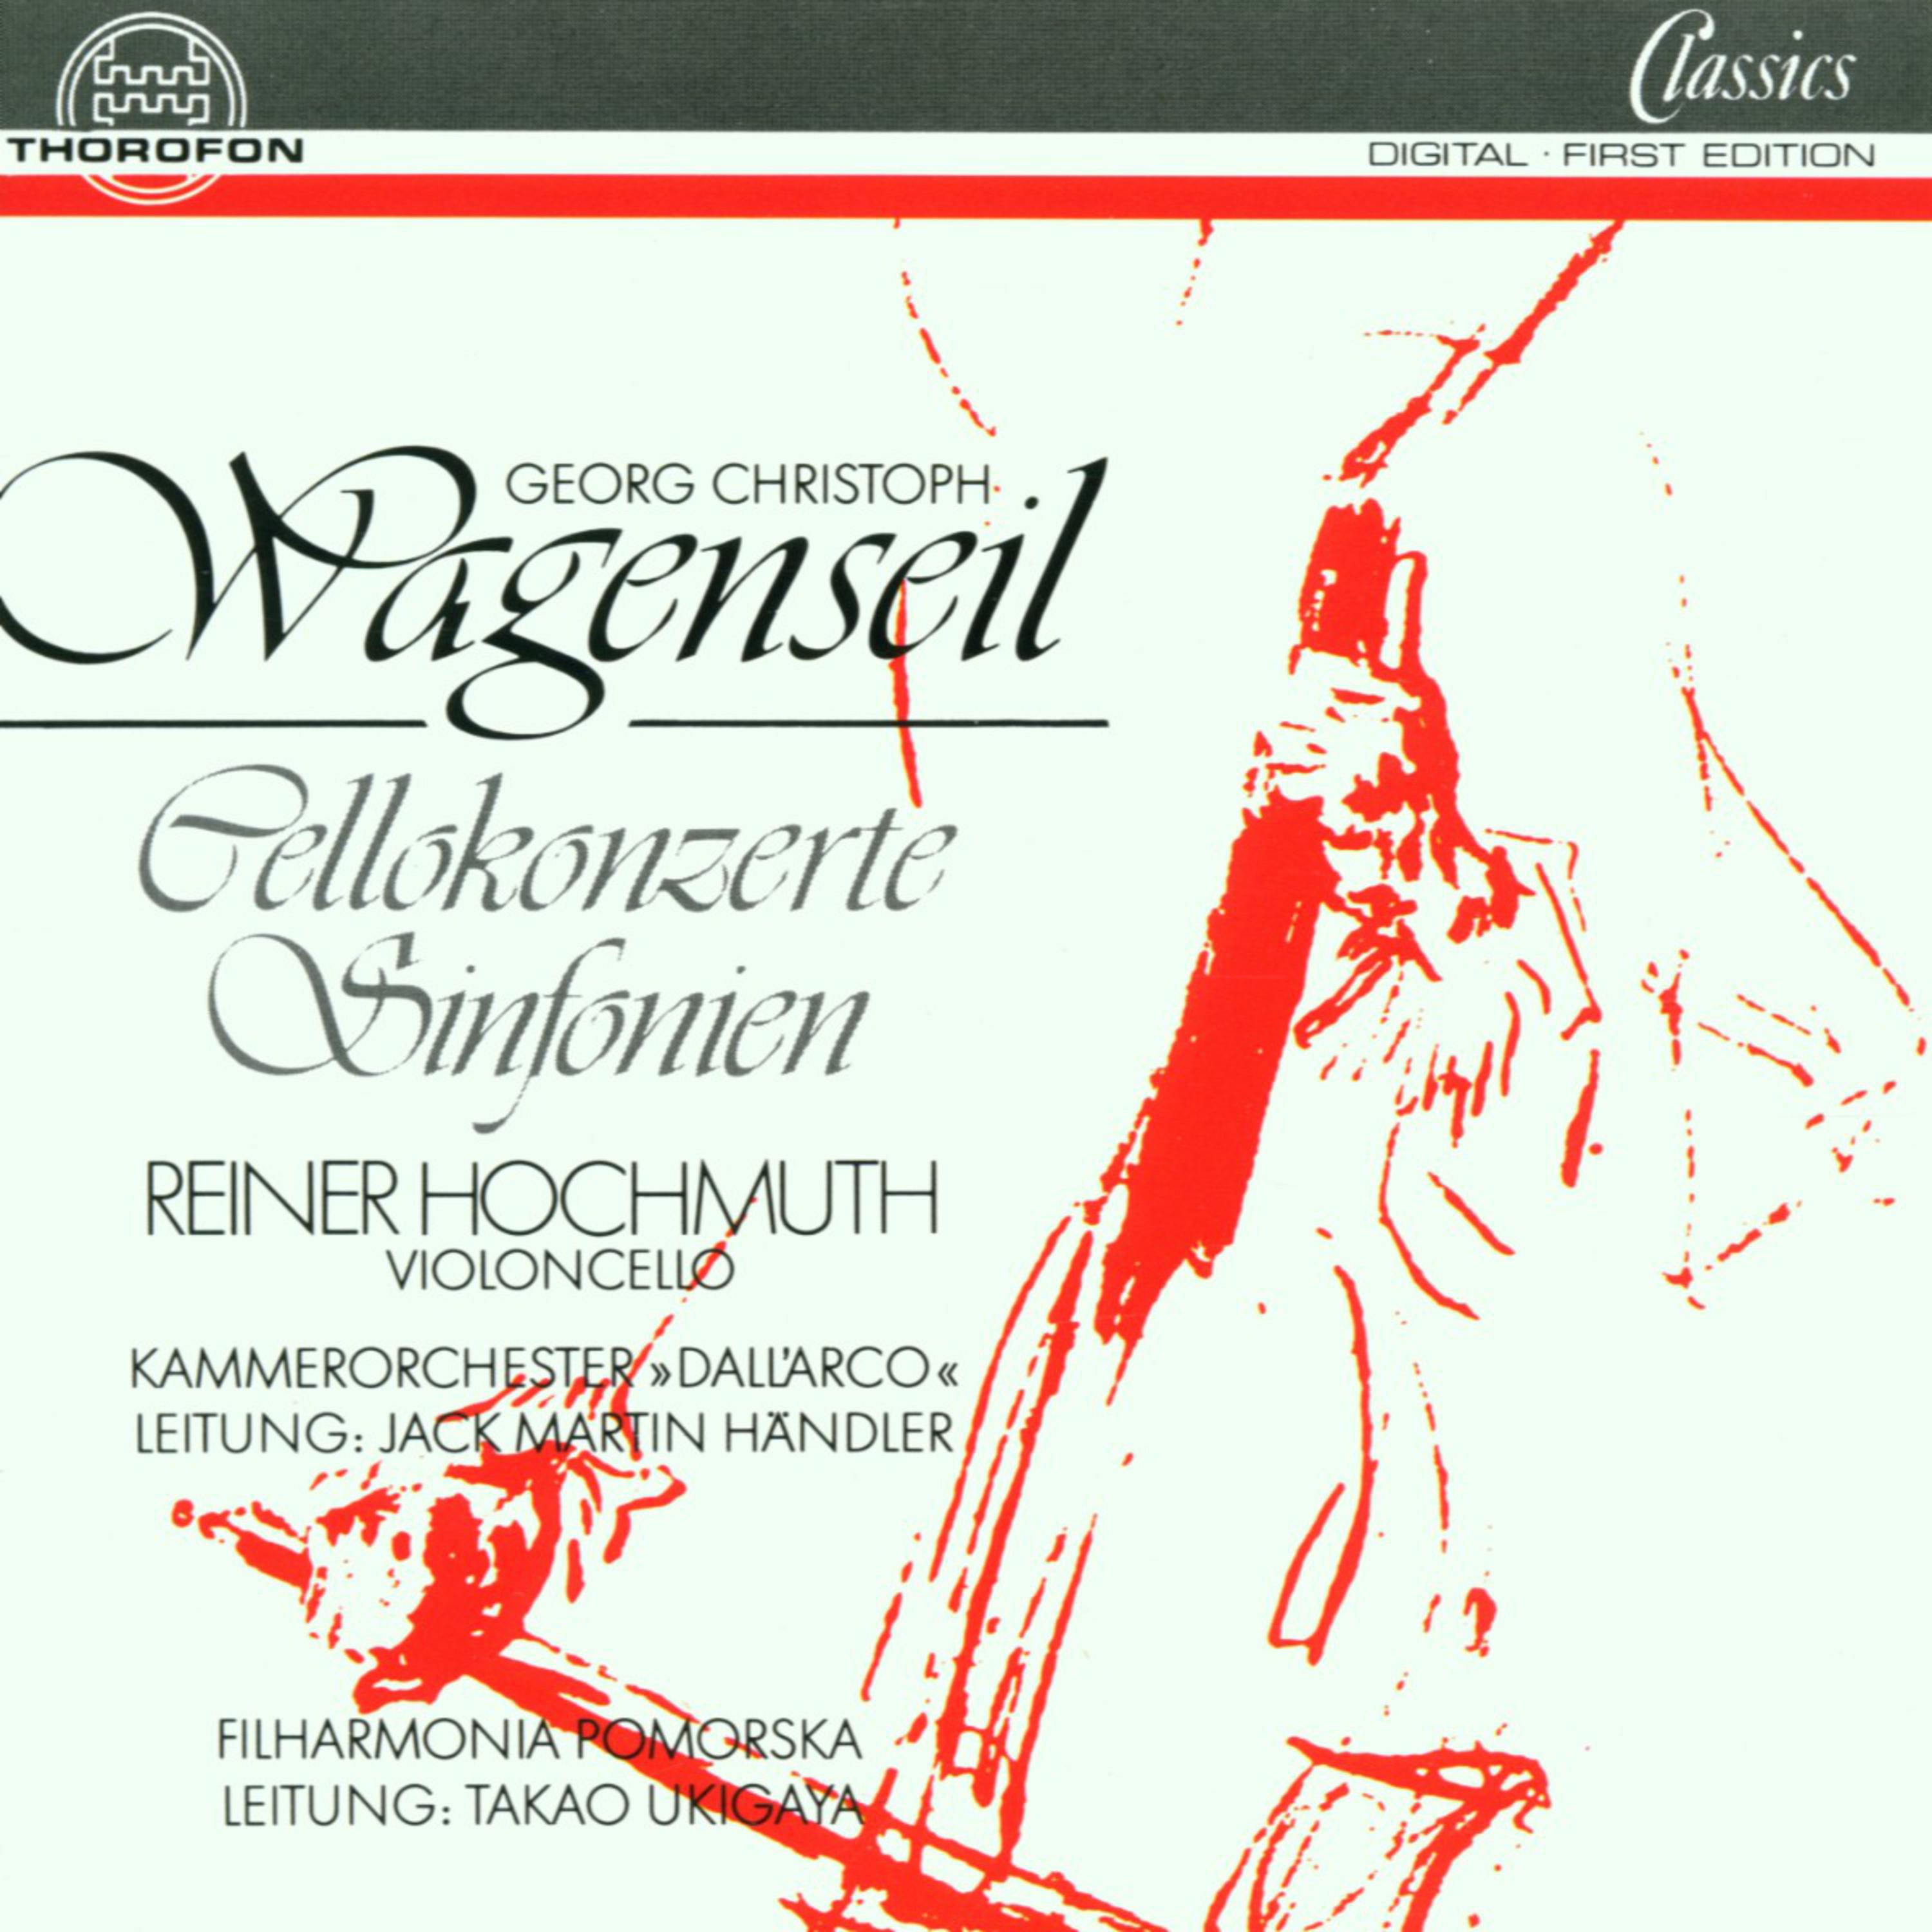 Concerto In A fü r Violoncello und Streichorchester: III. Allegro moderato Cantabile con grazia